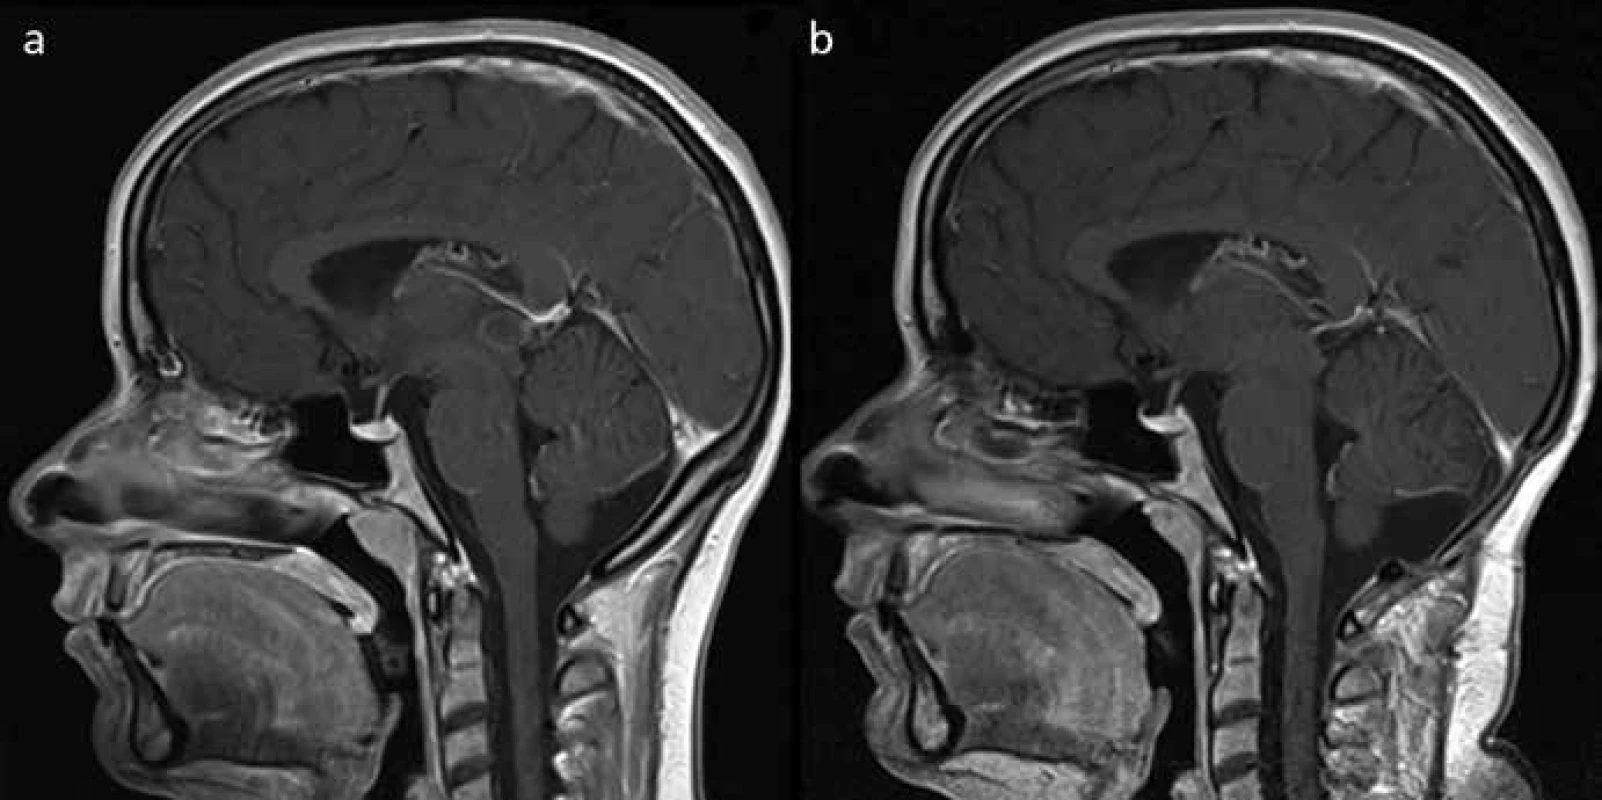 Pacientka 2 před a po operaci (MRI-T2 sekvence s kontrastem).